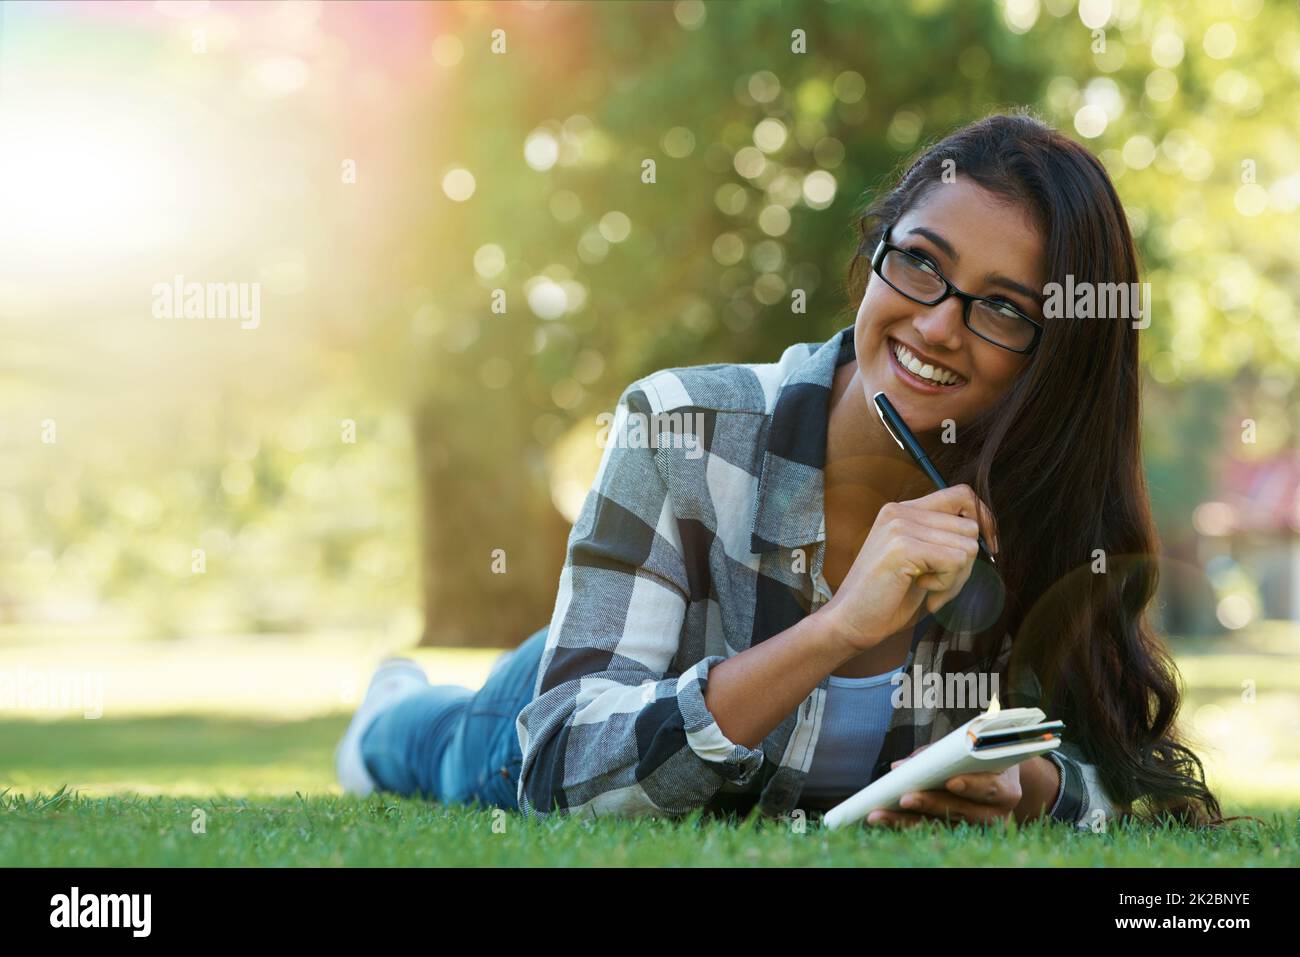 En julant ses pensées. Une jeune femme couché sur l'herbe écrivant dans un carnet. Banque D'Images